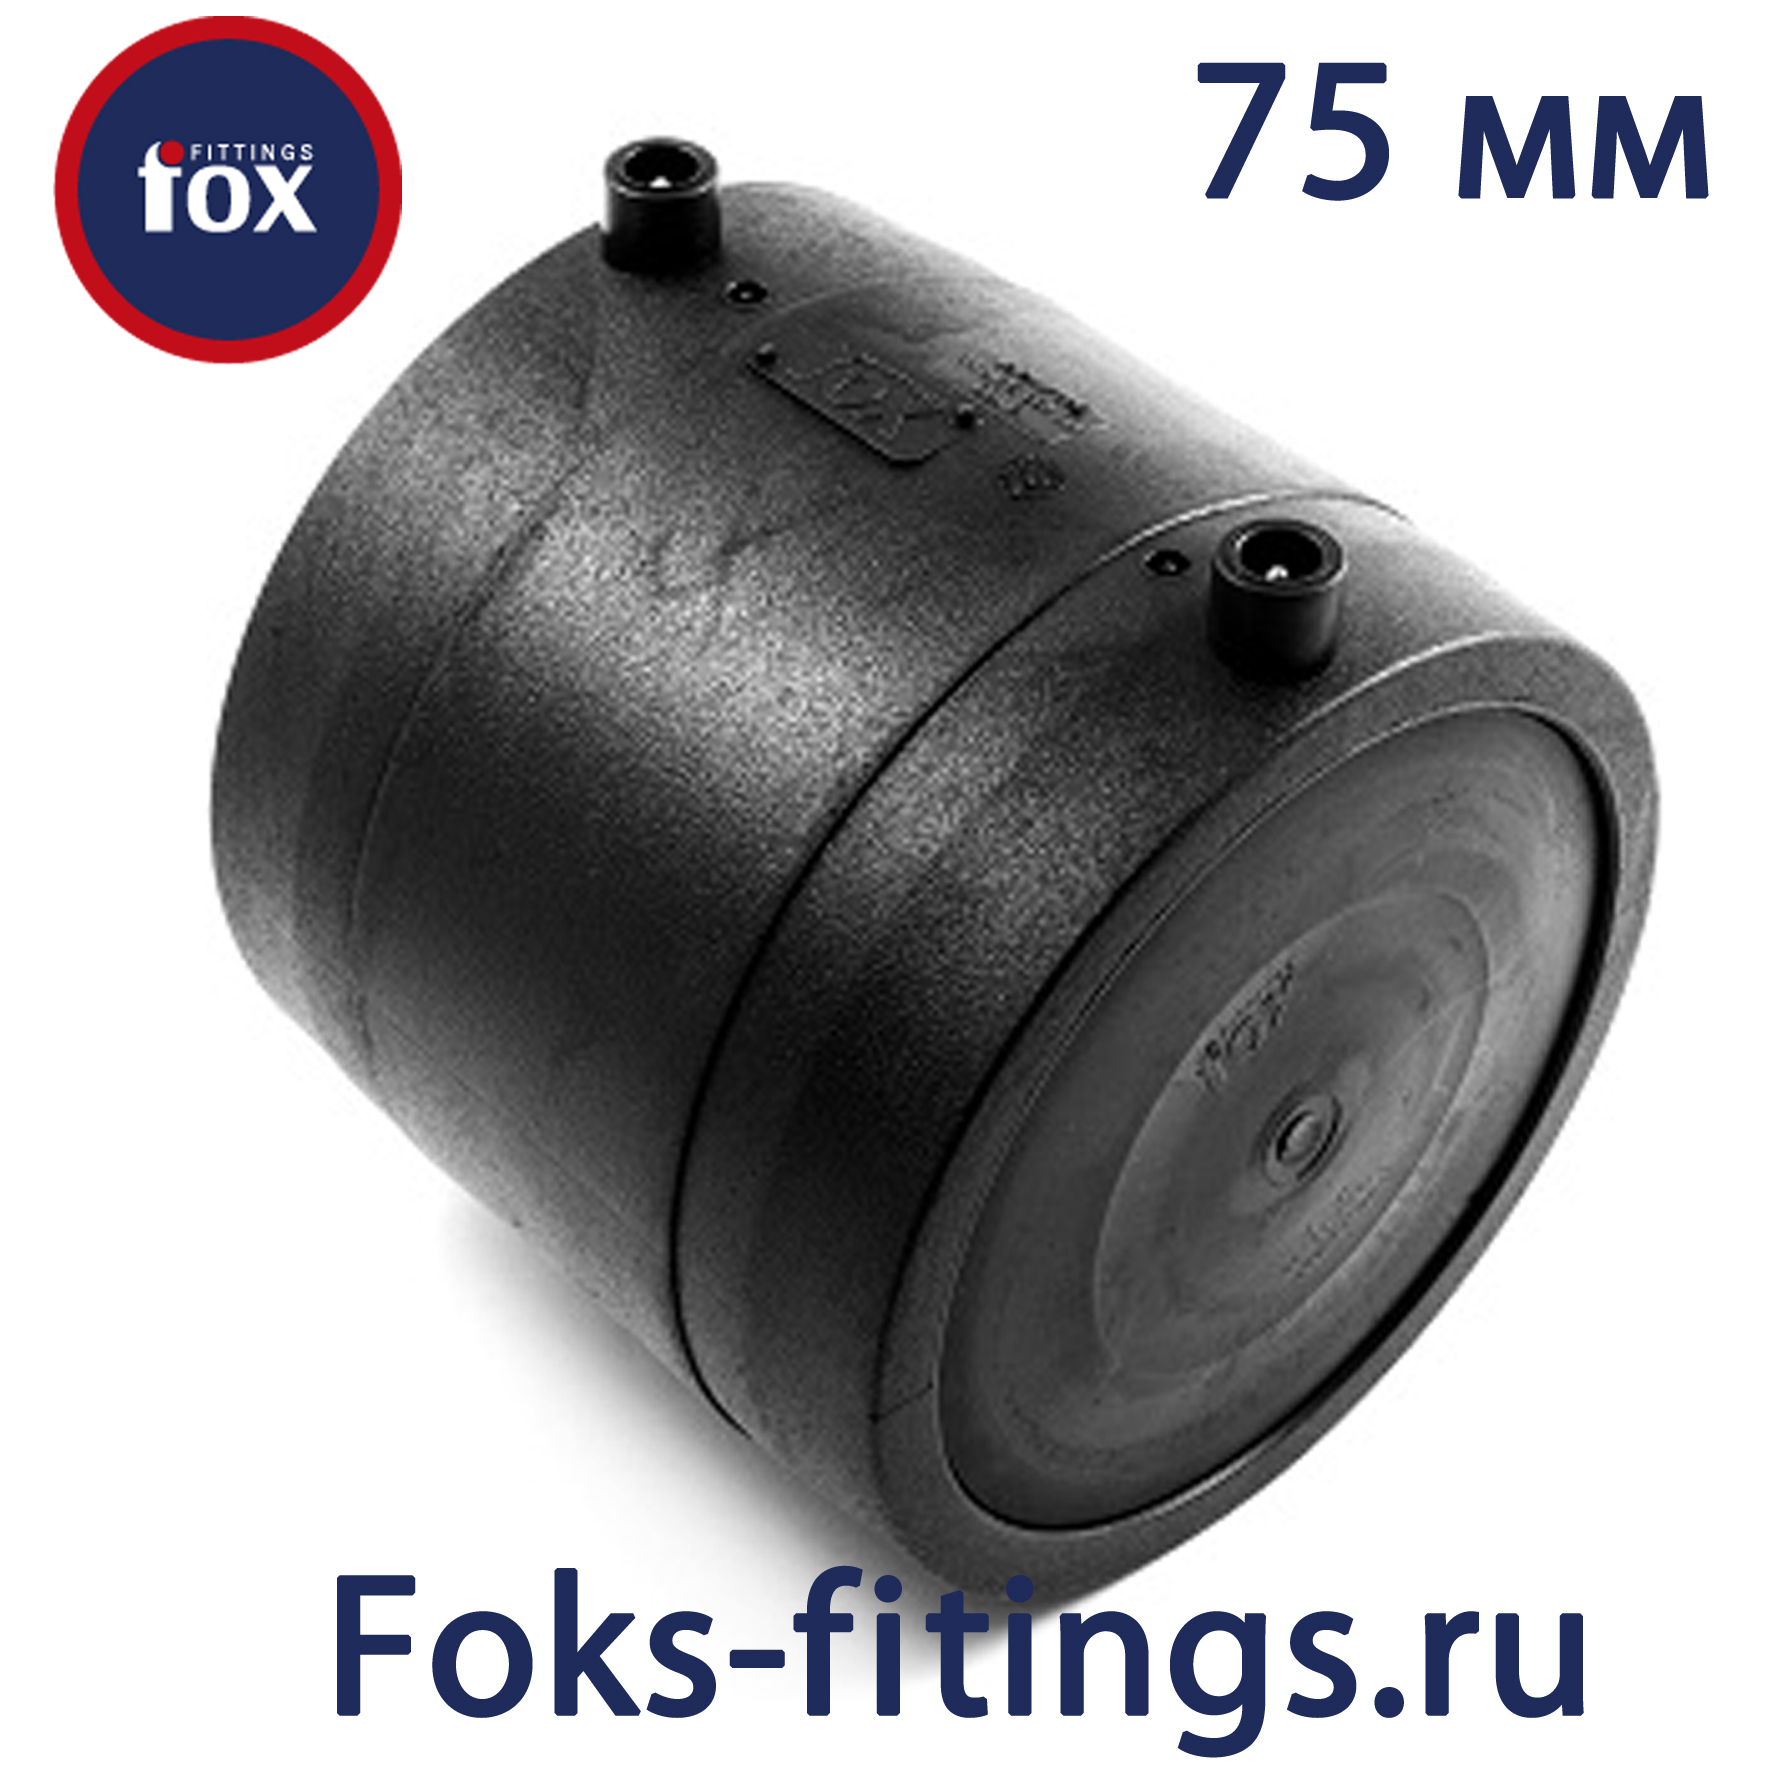 Электросварная заглушка 75 мм SDR 11 - продажа по недорогим ценам в СПб .